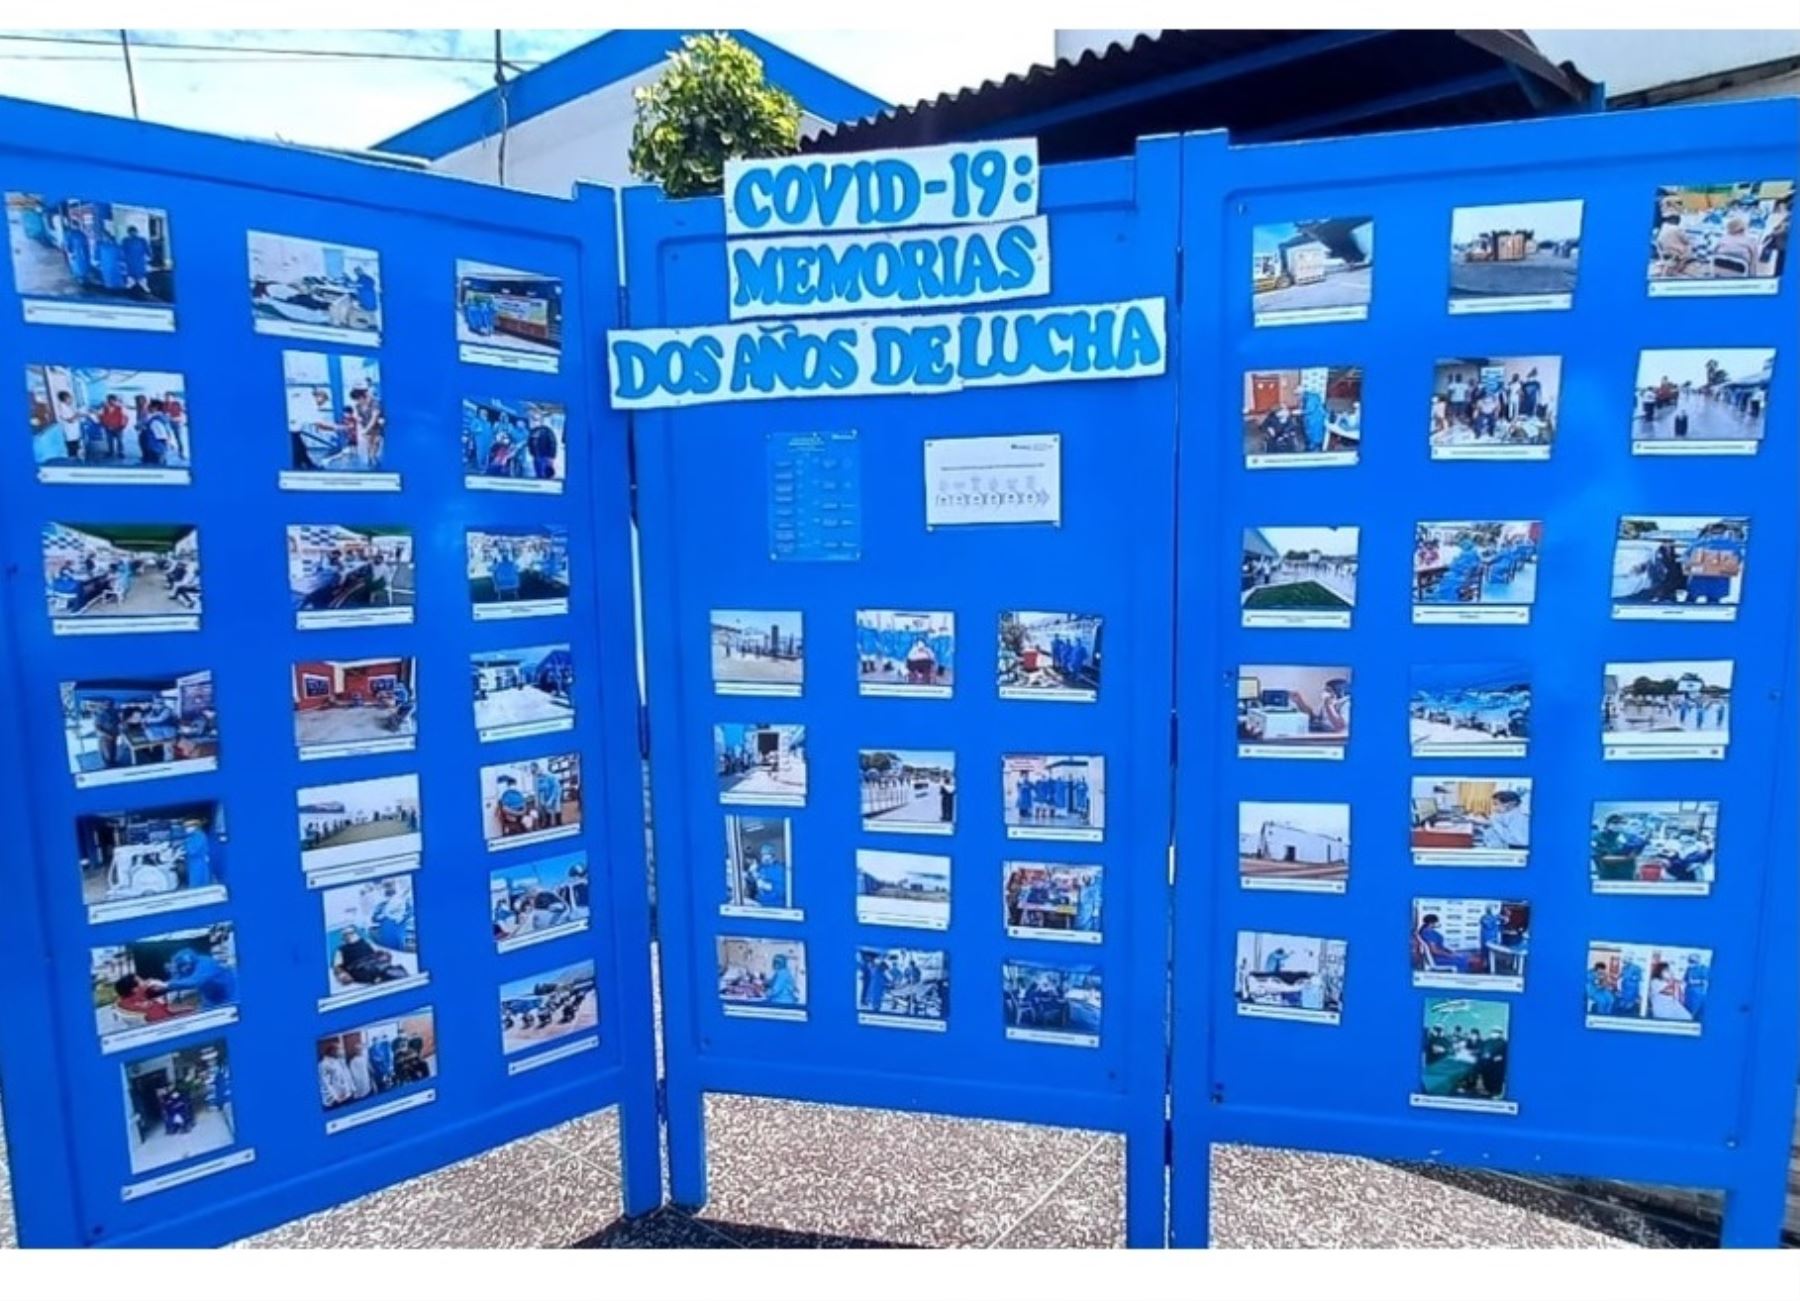 El Hospital de Essalud en Chimbote rinde homenaje a las víctimas de covid-19 con galería fotográfica a dos años del inicio de la pandemia. ANDINA/Difusión